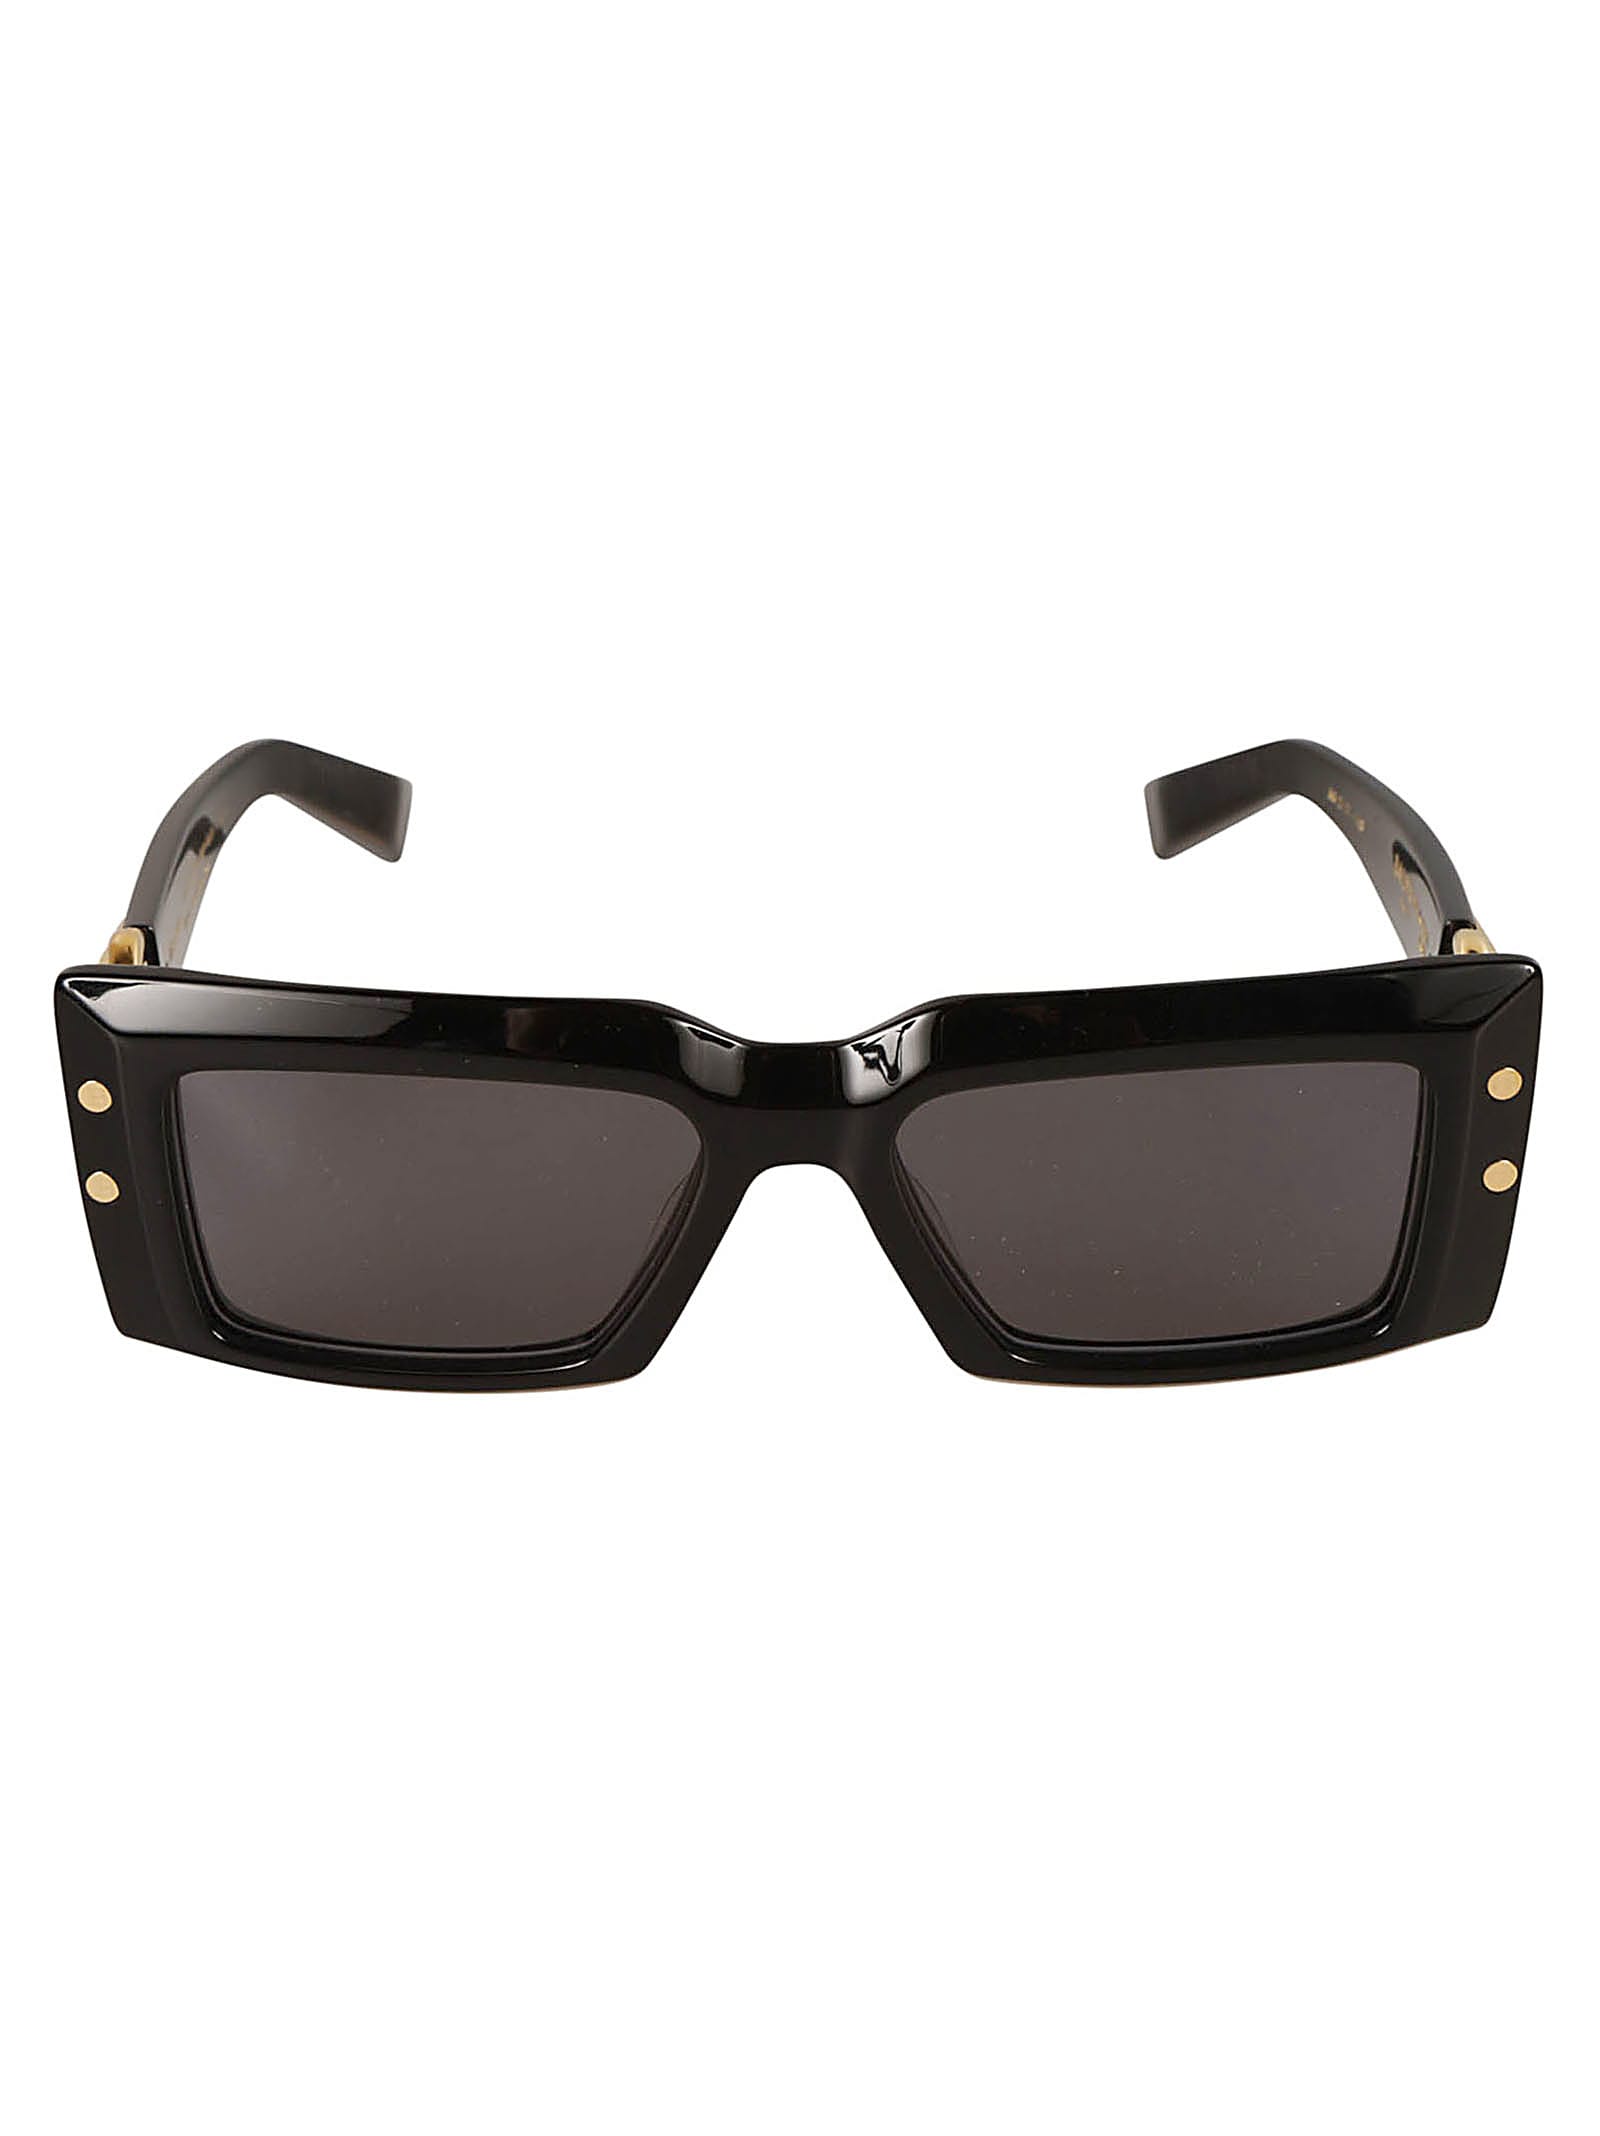 Imperial Sunglasses Sunglasses